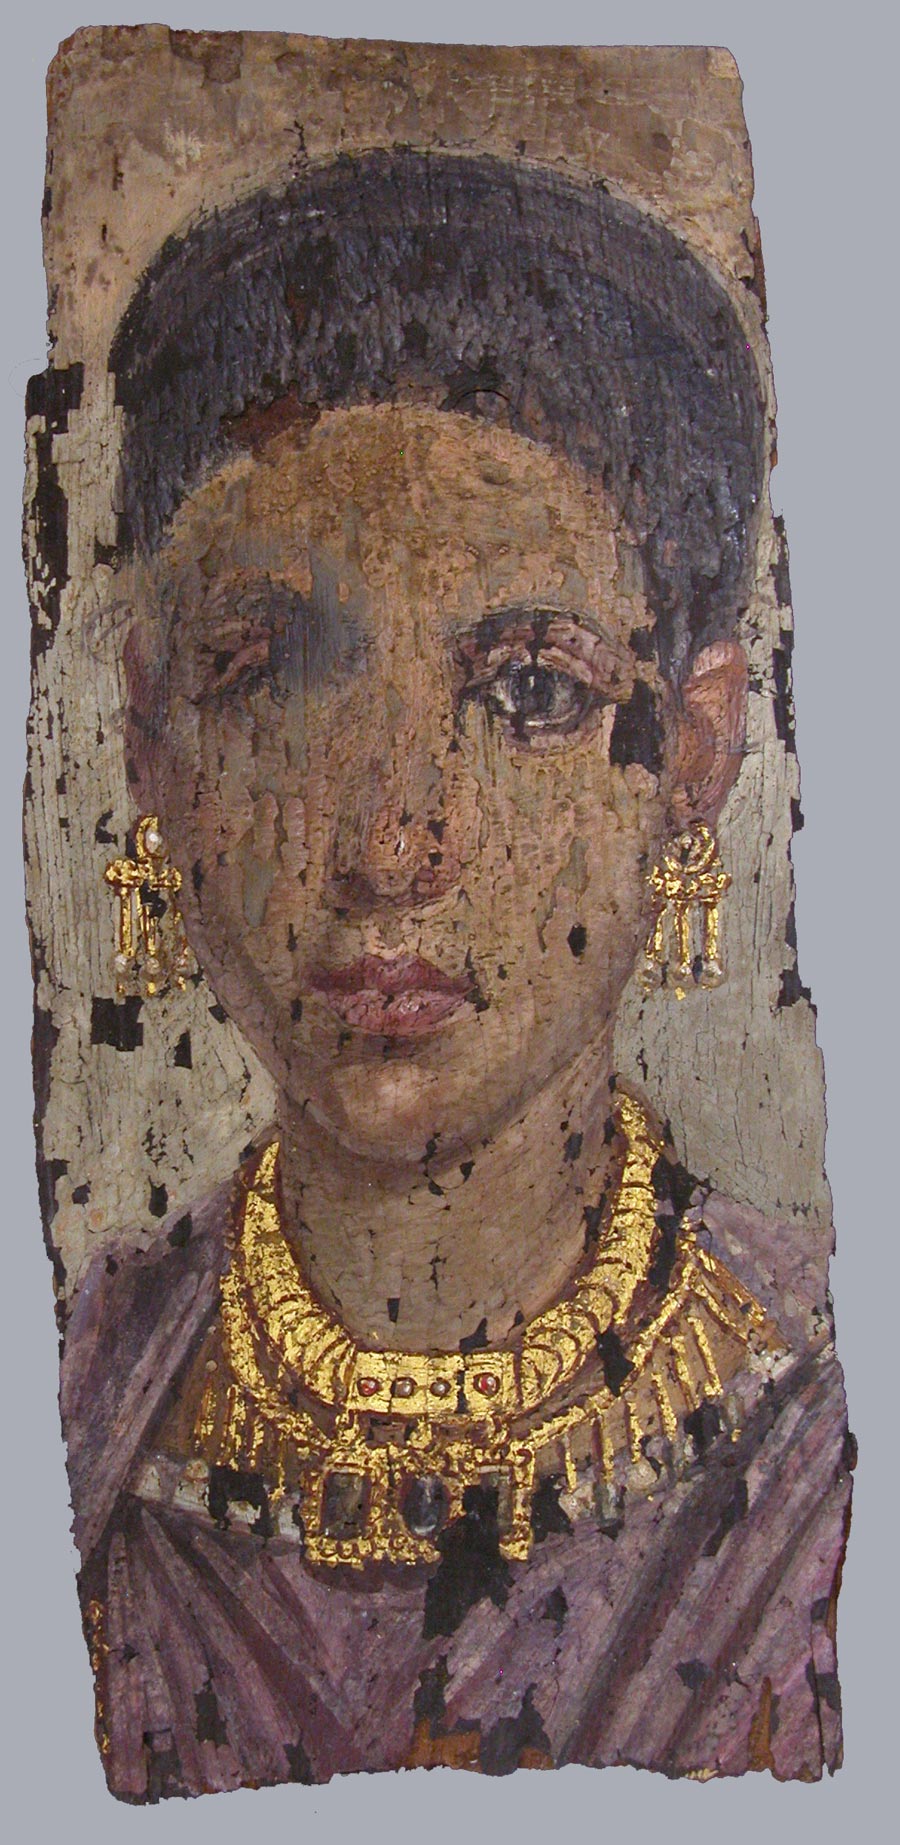 Painted mummy portrait